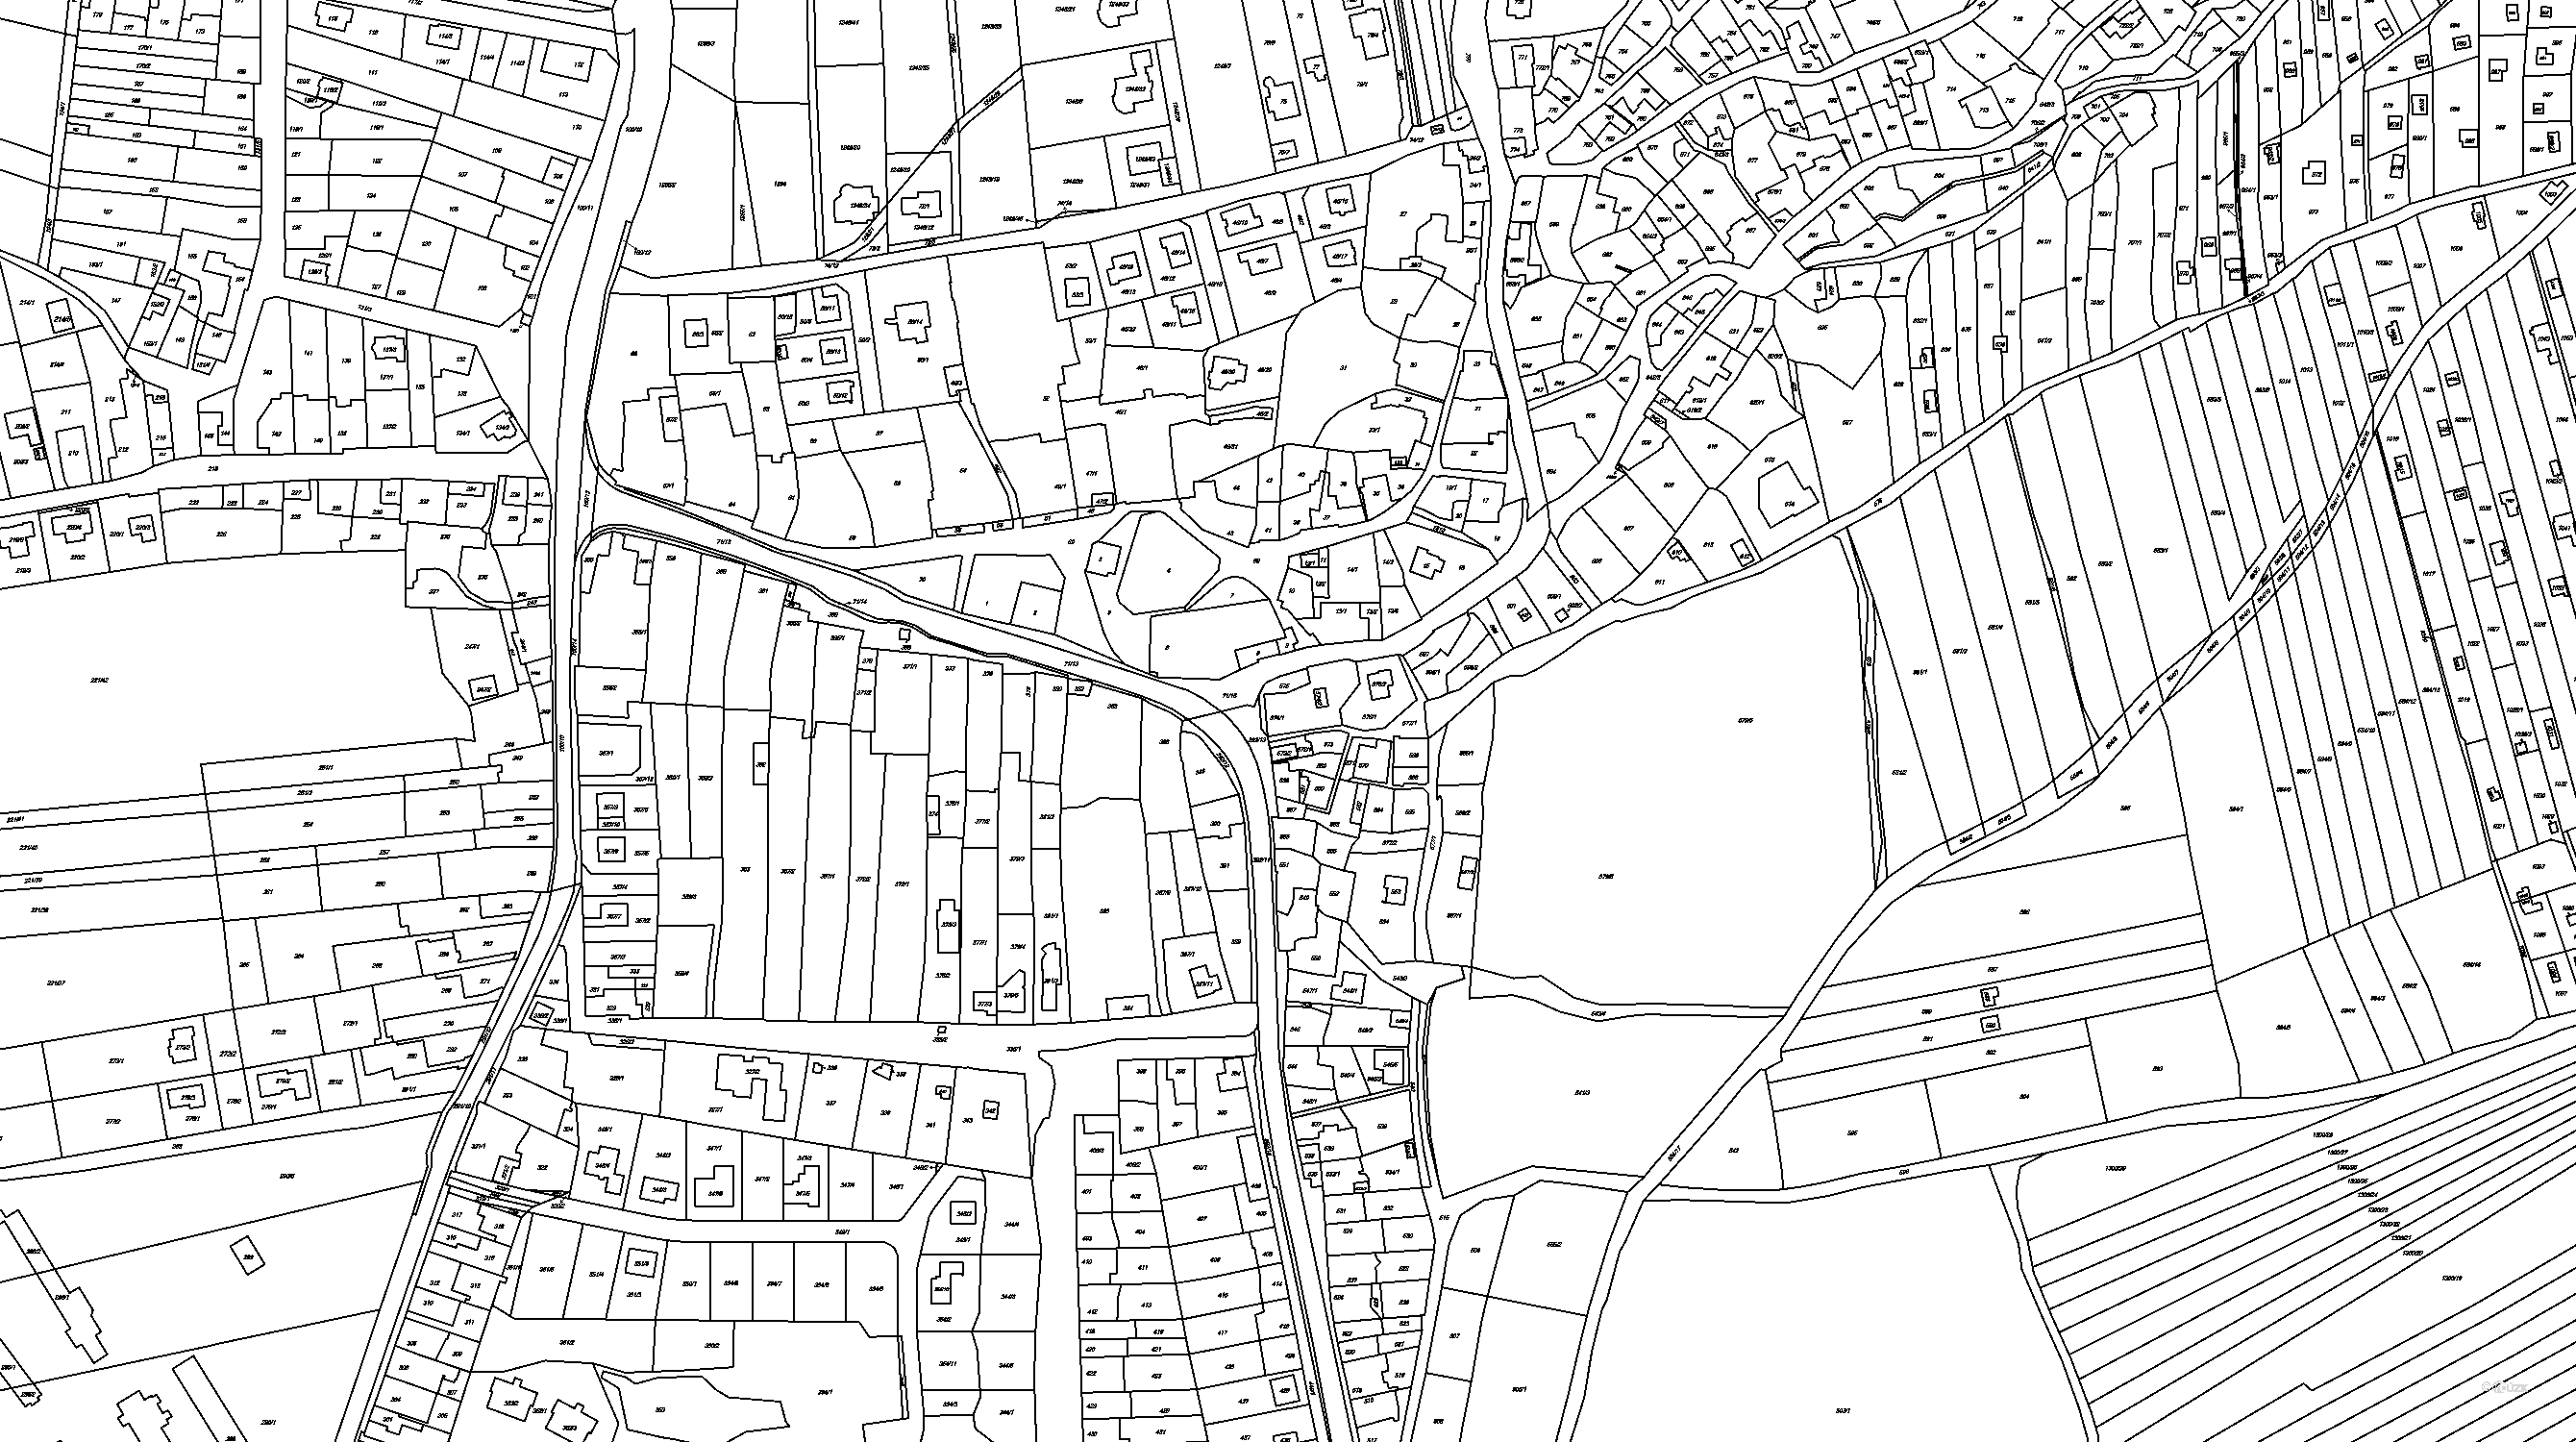 katastrální mapa Droždín, katastrální území 632635   katastr nemovitostí katastrální mapa